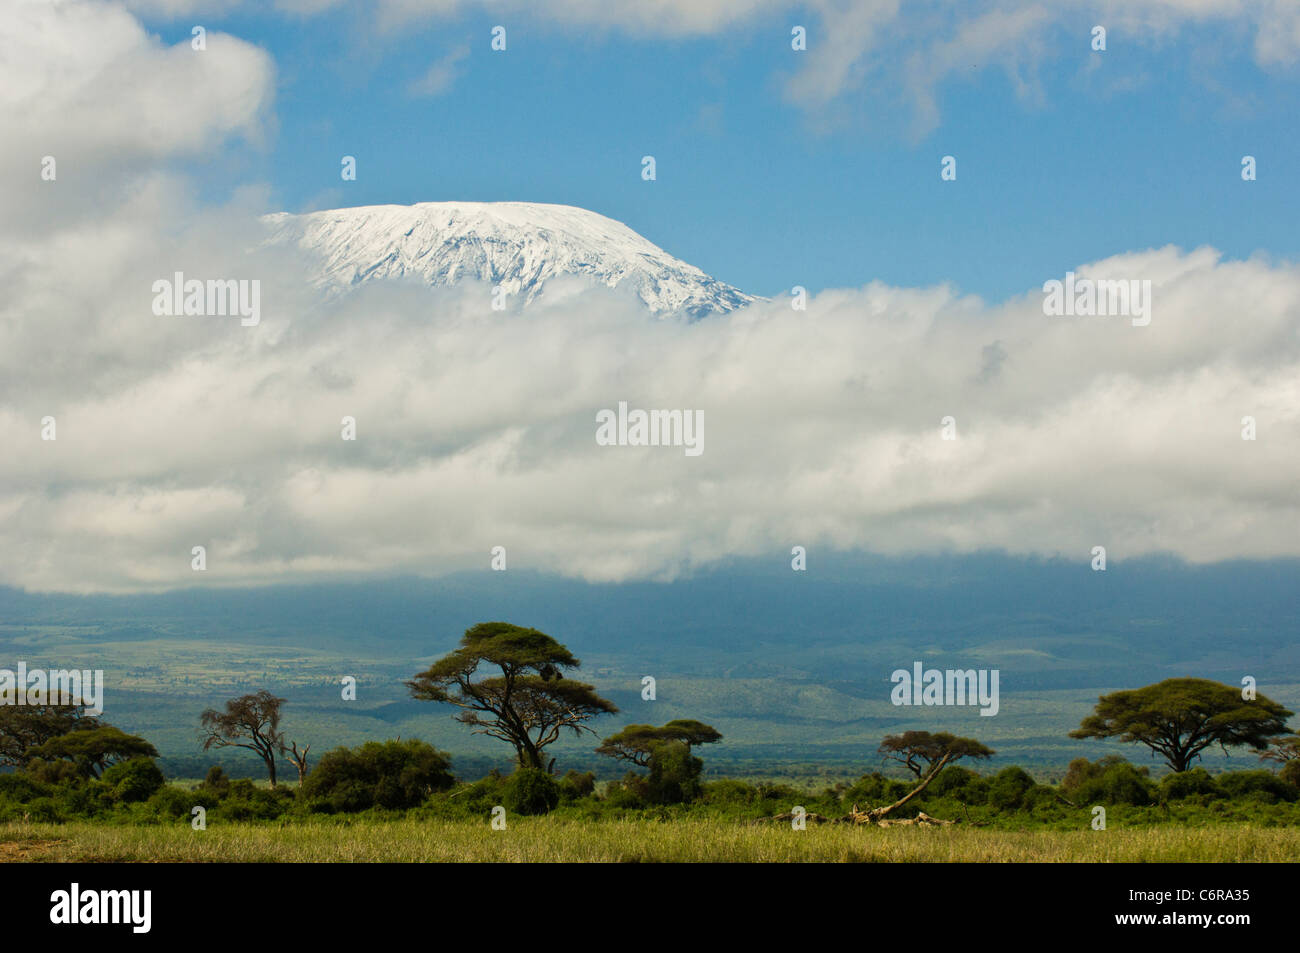 Une vue typique nuageux du Kilimandjaro Kibo du pic. La montagne se trouve en Tanzanie, de l'autre côté de la frontière. Banque D'Images